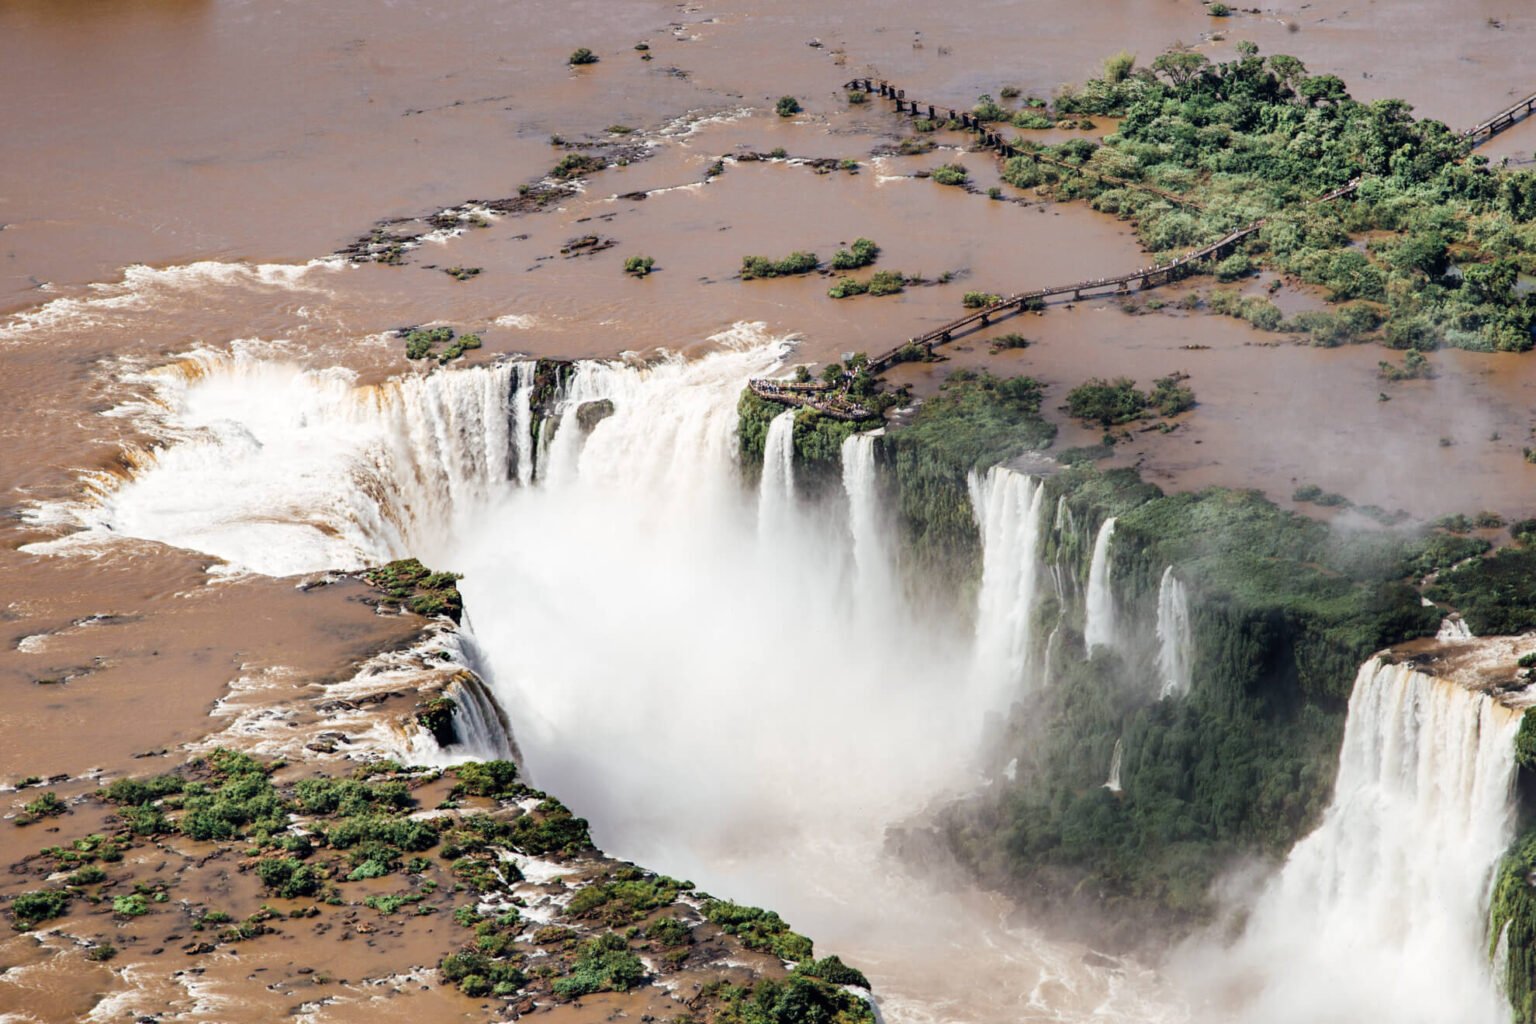 Garganta do Diabo vista durante o passeio de helicóptero em Foz do Iguaçu